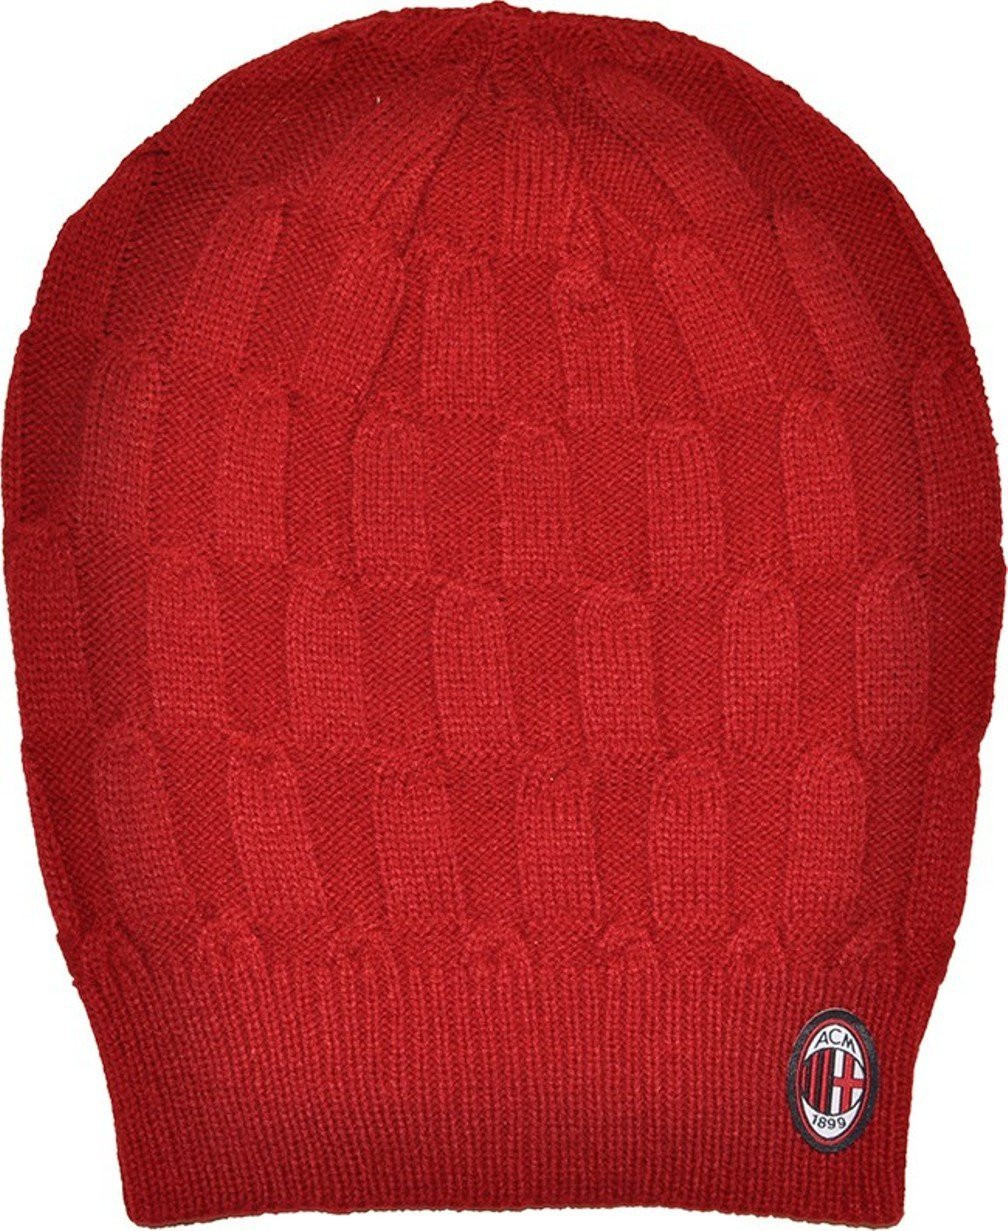 Cappello berretto Milan rasta abbigliamento tifosi milanisti calcio *02451 pelusciamo.com